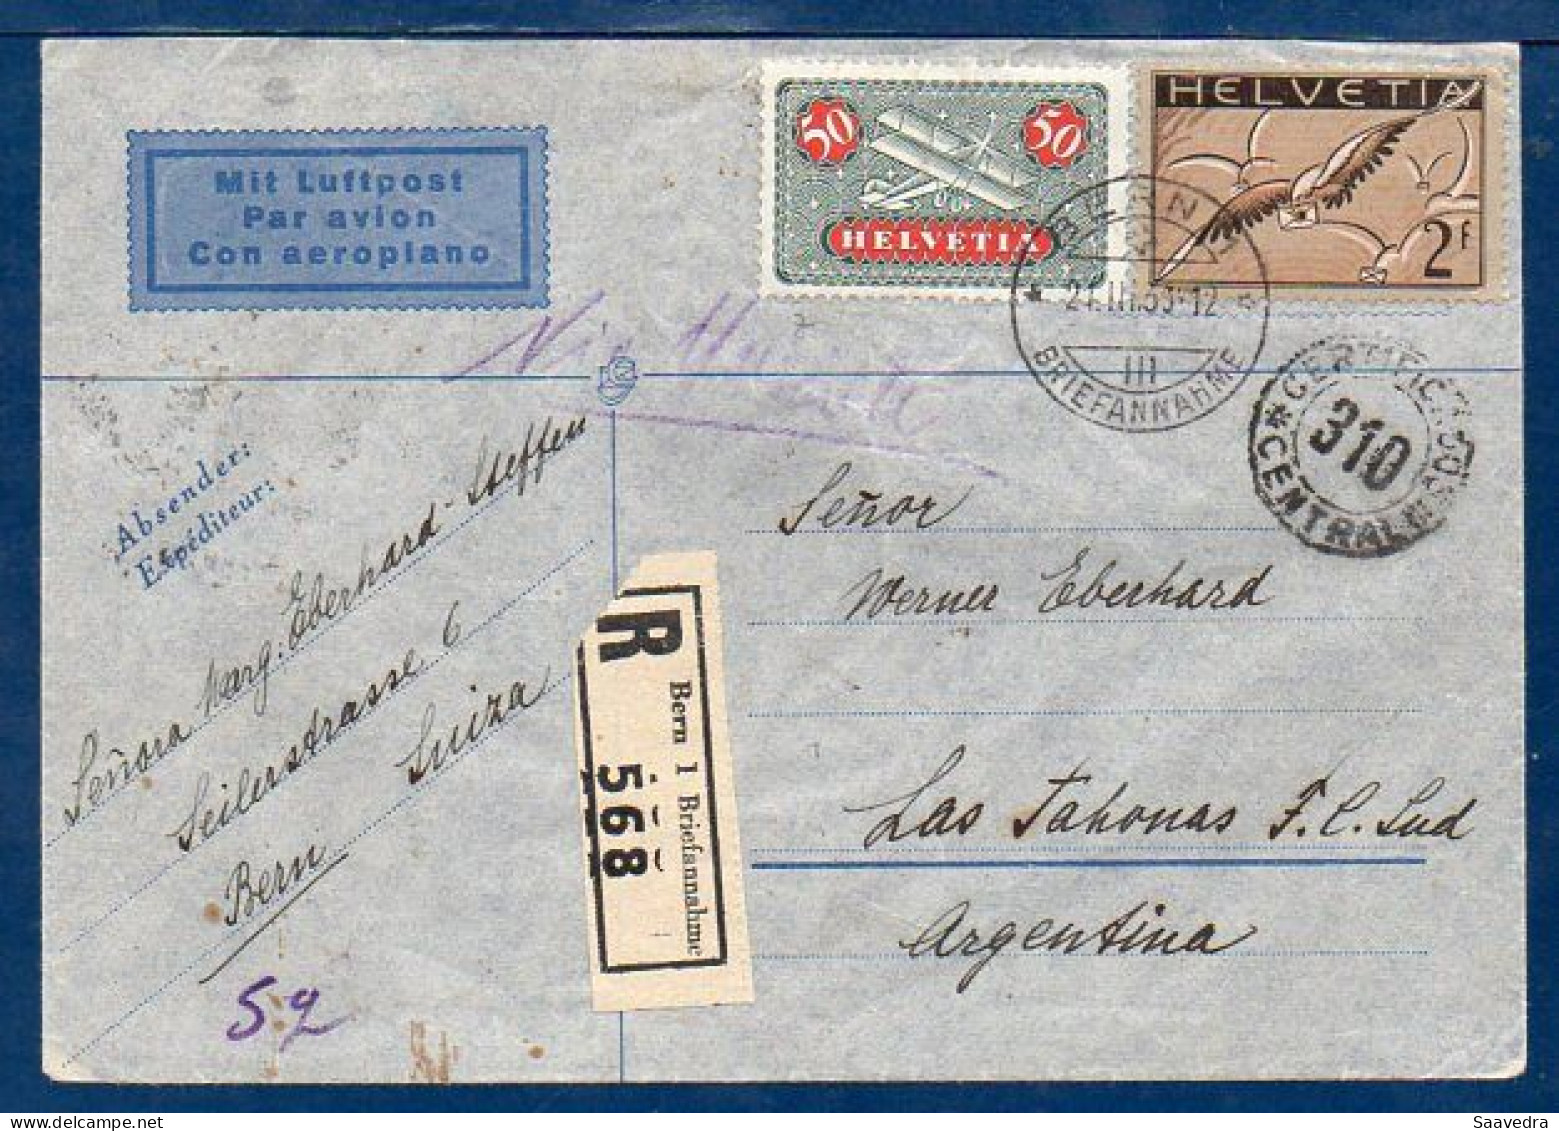 Switzerland To Argentina, 1936, Via Air France  (008) - Luchtpost